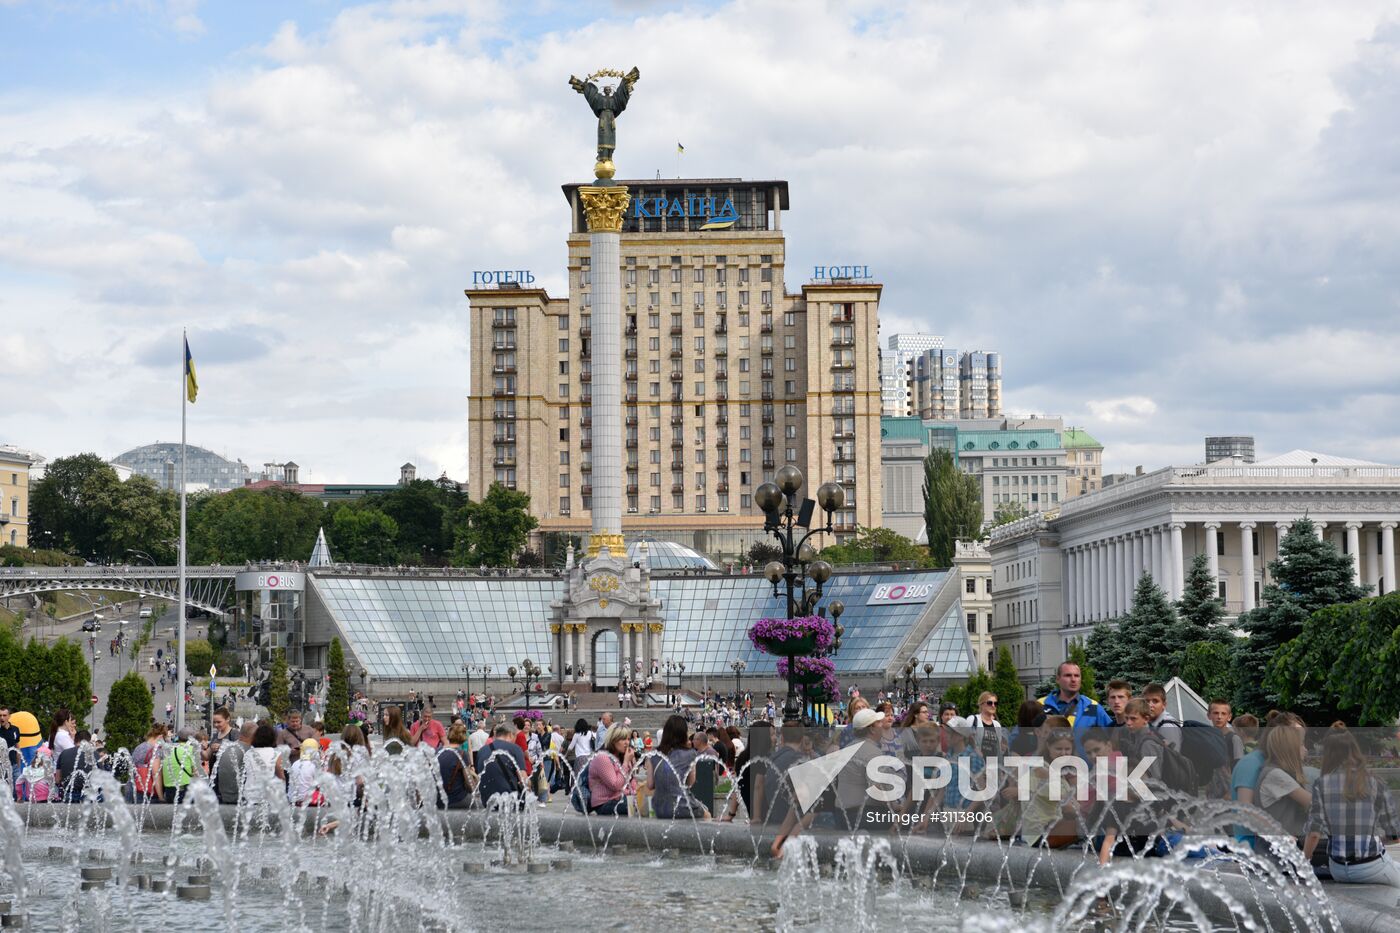 City Day celebrations in Kiev